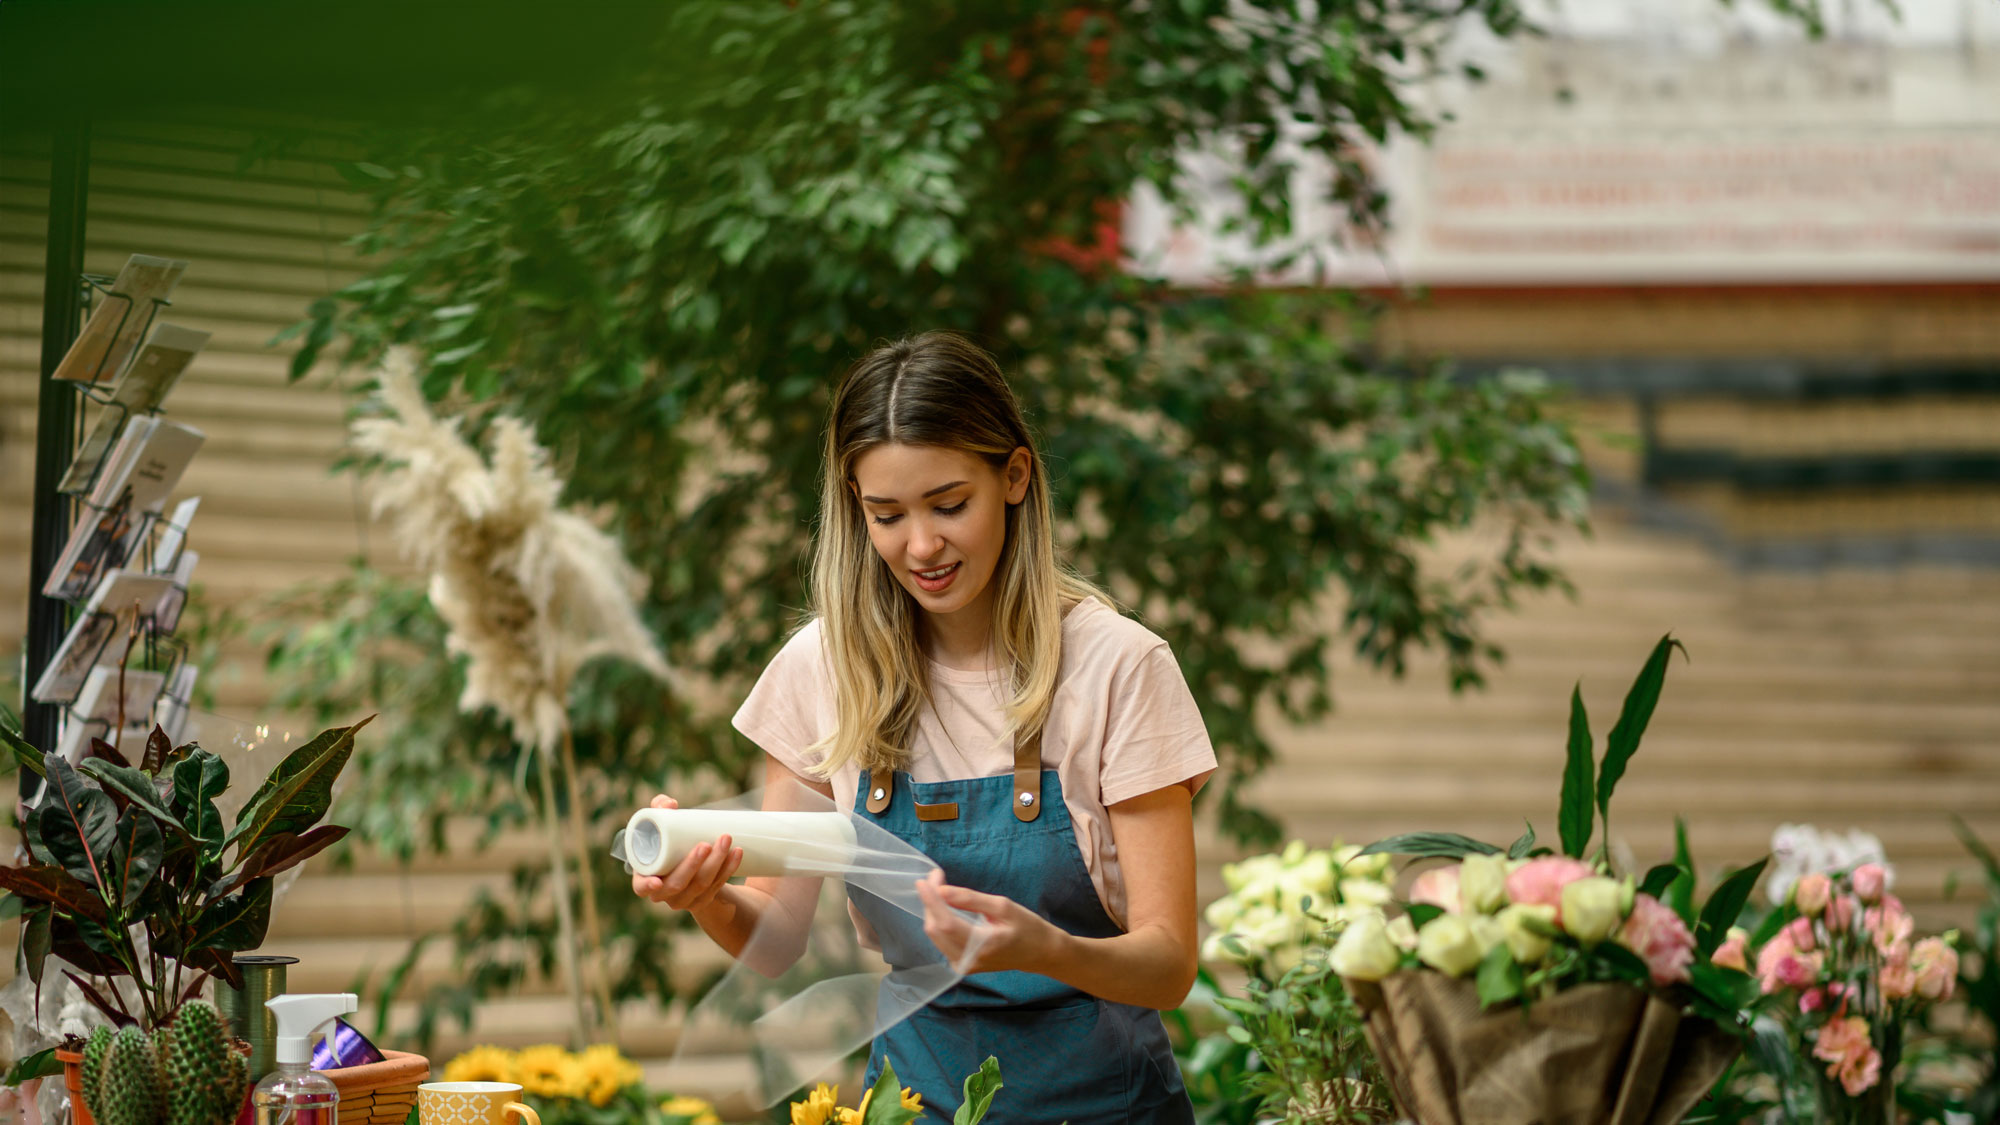 Leerstand verringern, Lebensqualität steigern - zwei Frauen mit Blumen in der Hand, vor einem Ladenlokal